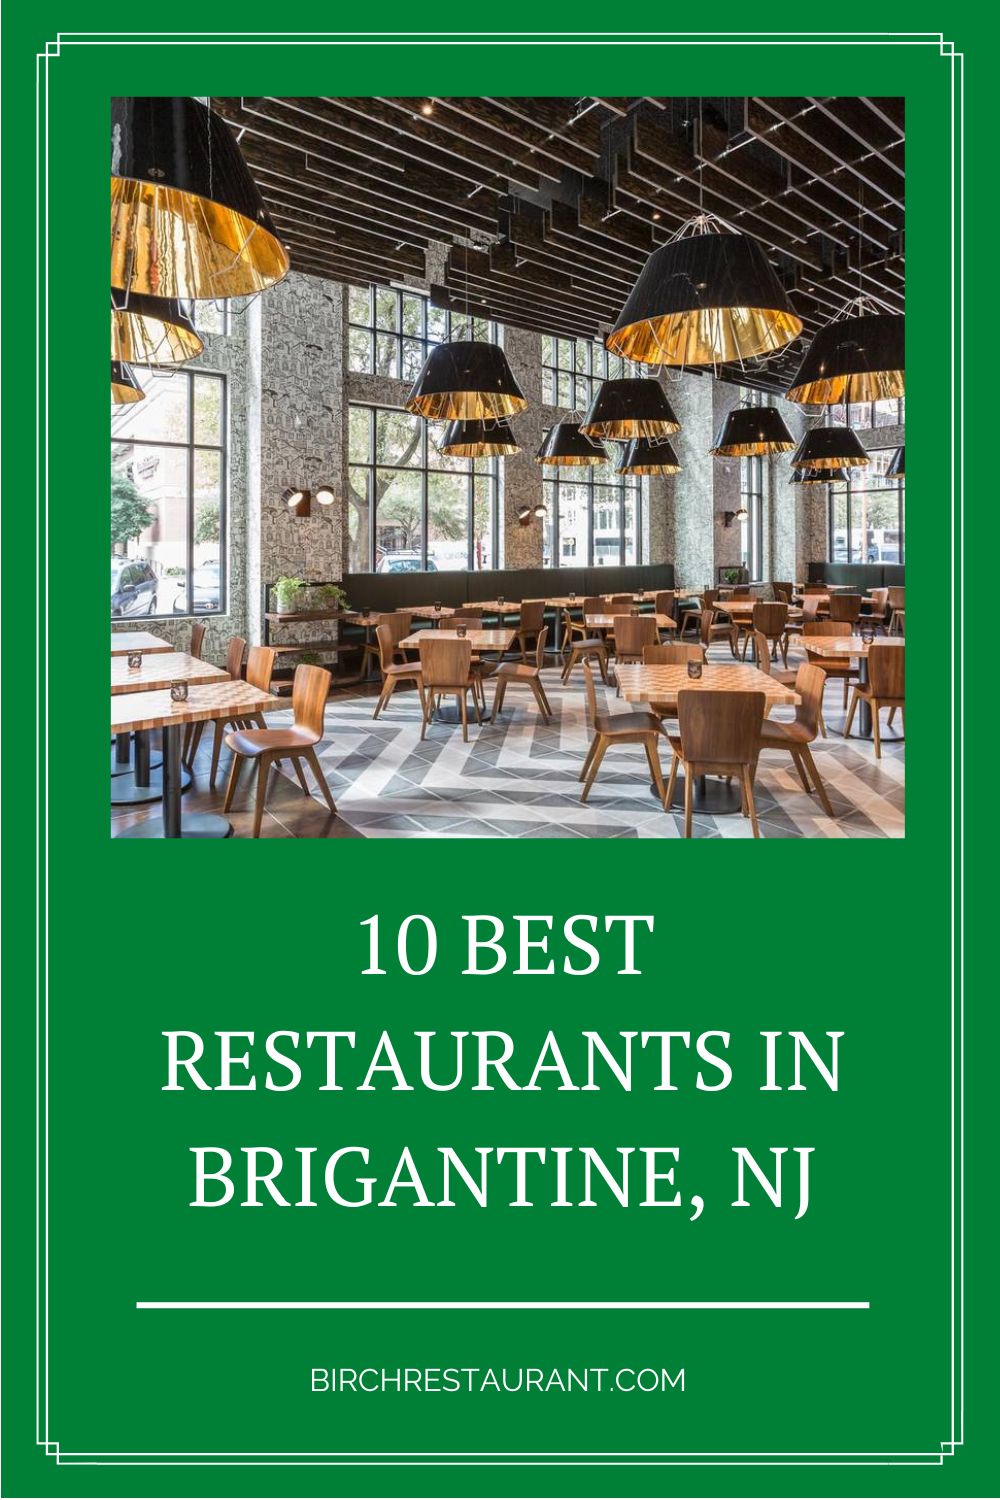 Best Restaurants in Brigantine